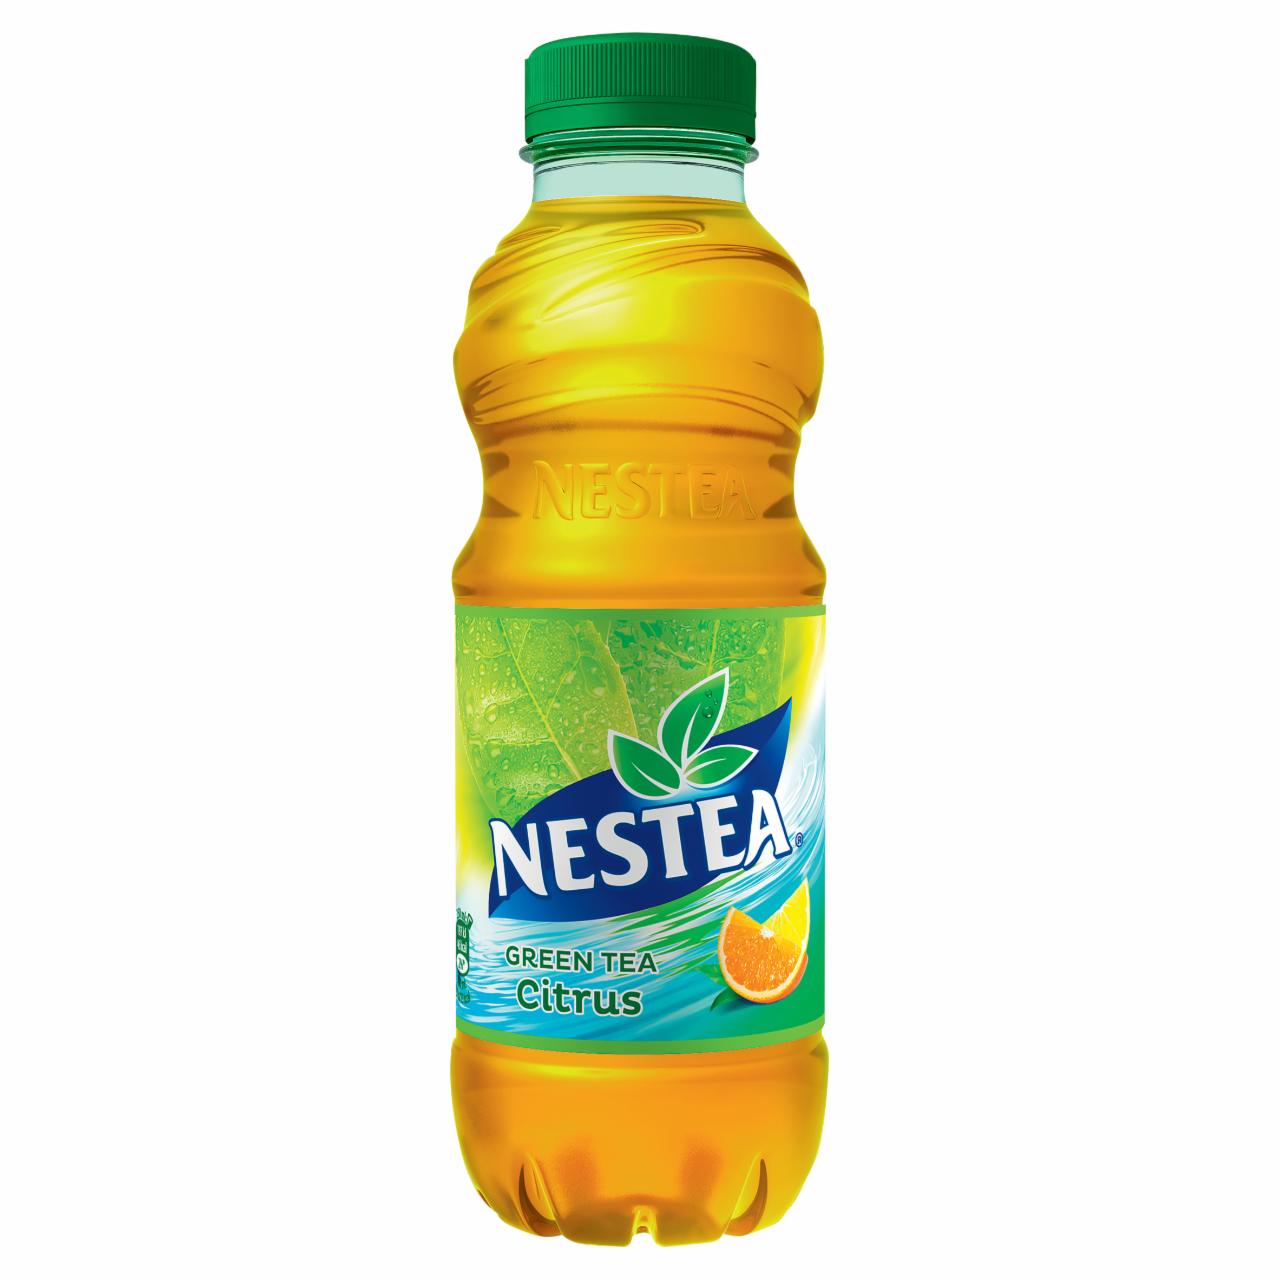 Képek - Nestea citrus ízesítésű zöldtea üdítőital cukrokkal és édesítőszerrel 0,5 l